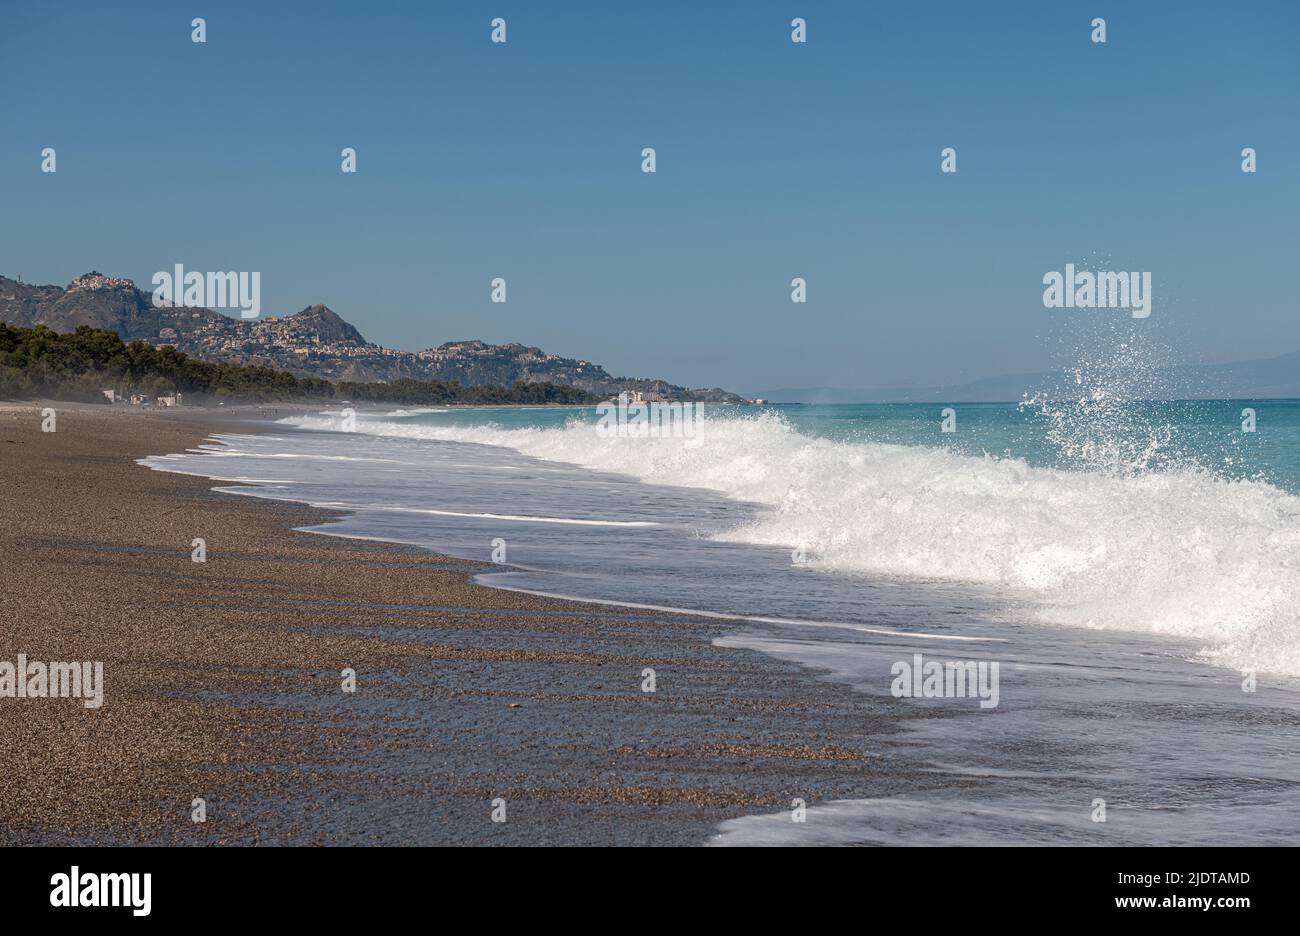 Rompiendo olas en la hermosa playa de Fondachello, Sicilia, Italia. Las populares ciudades de Taormina y Giardini Naxos se encuentran en la distancia Foto de stock